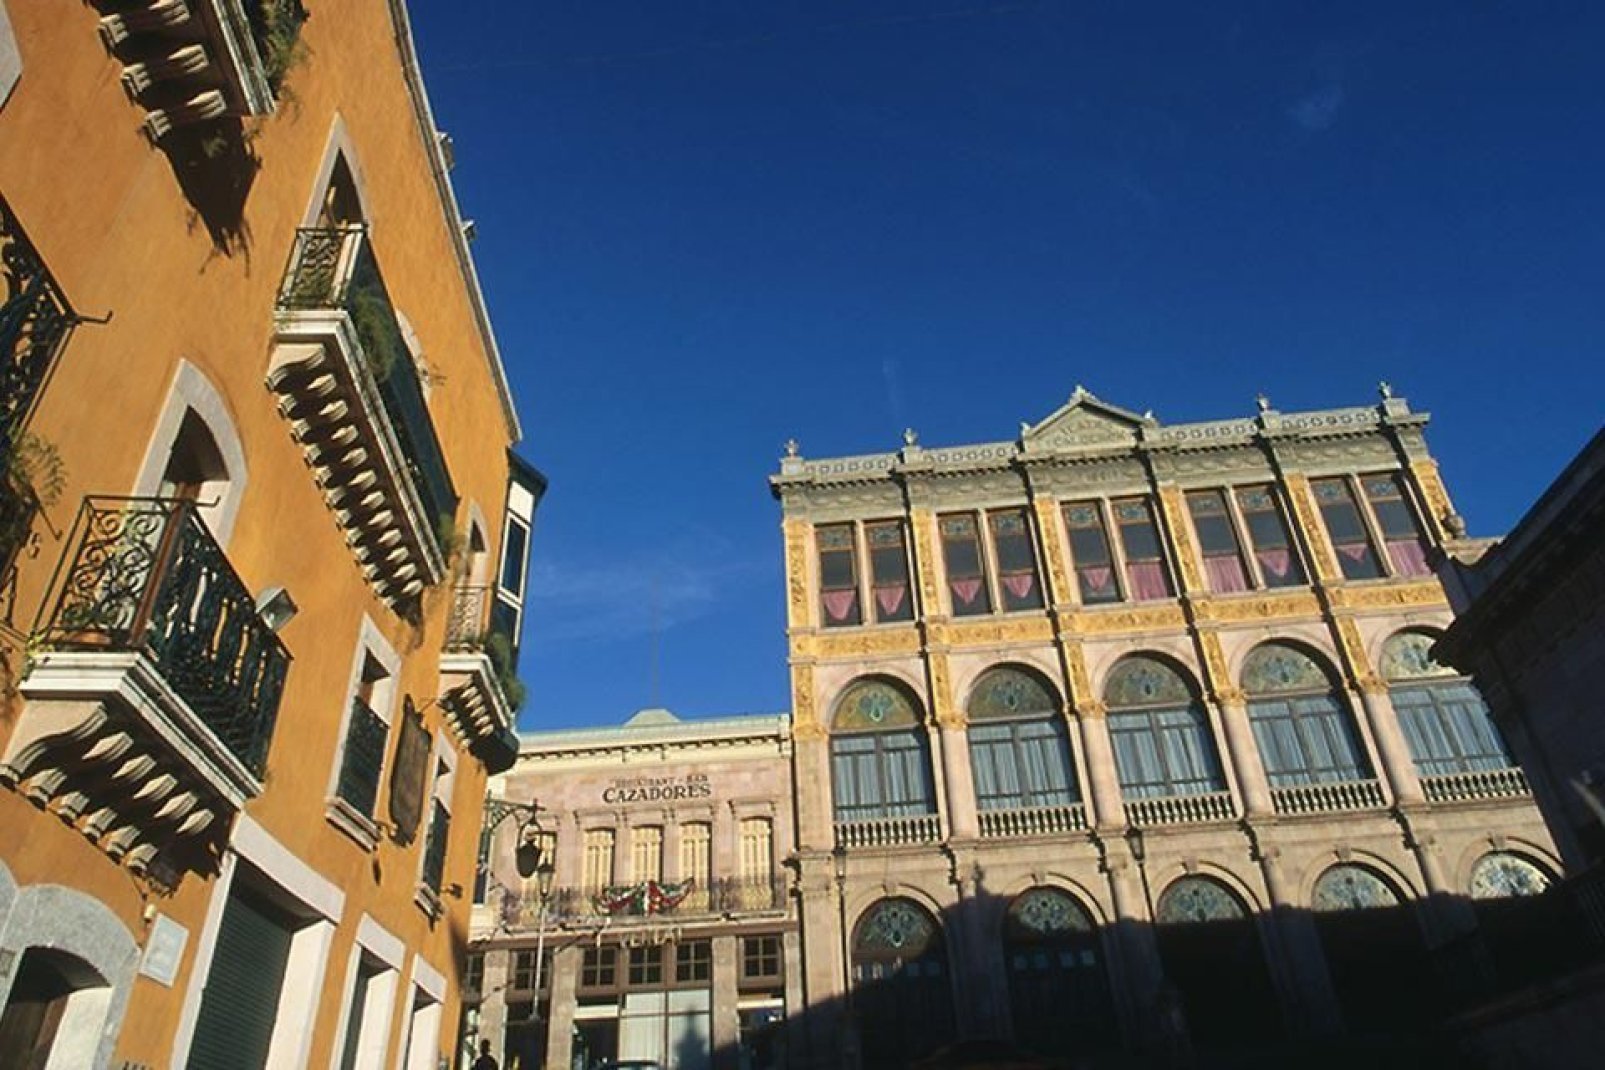 Il centro storico di Zacatecas è caratterizzato da decorazioni elaborate di stile coloniale, strade di ciotoli e balconi in ferro battuto.